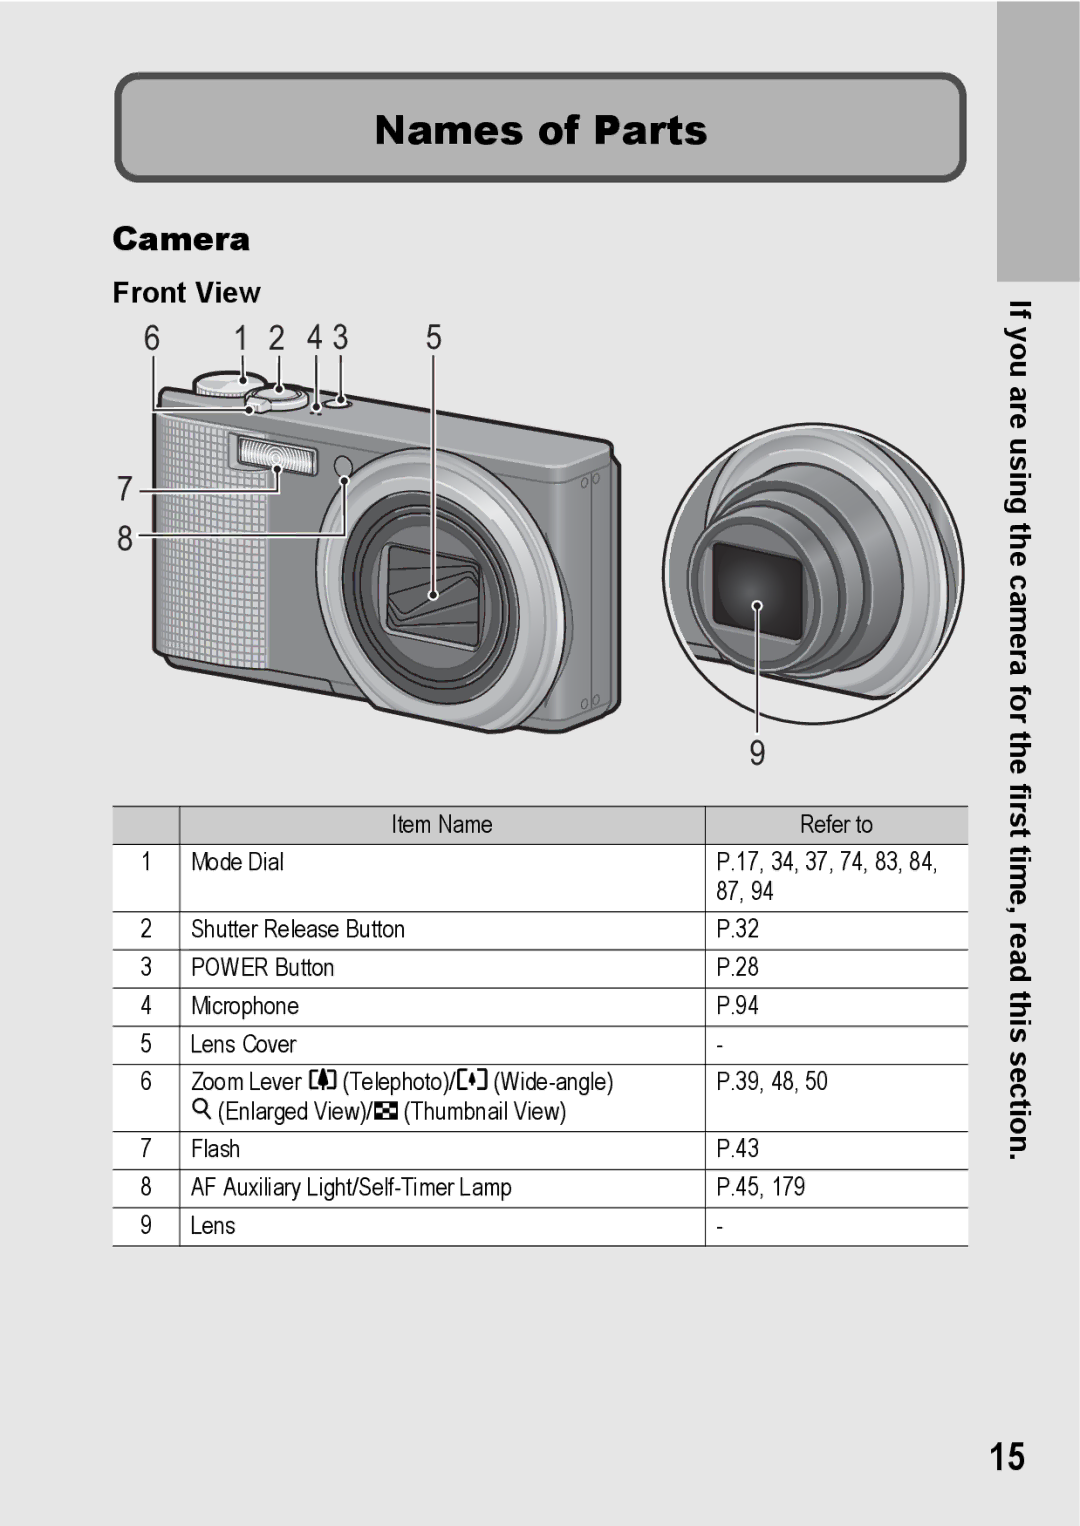 Samsung CX2 manual Names of Parts, Camera, Front View 